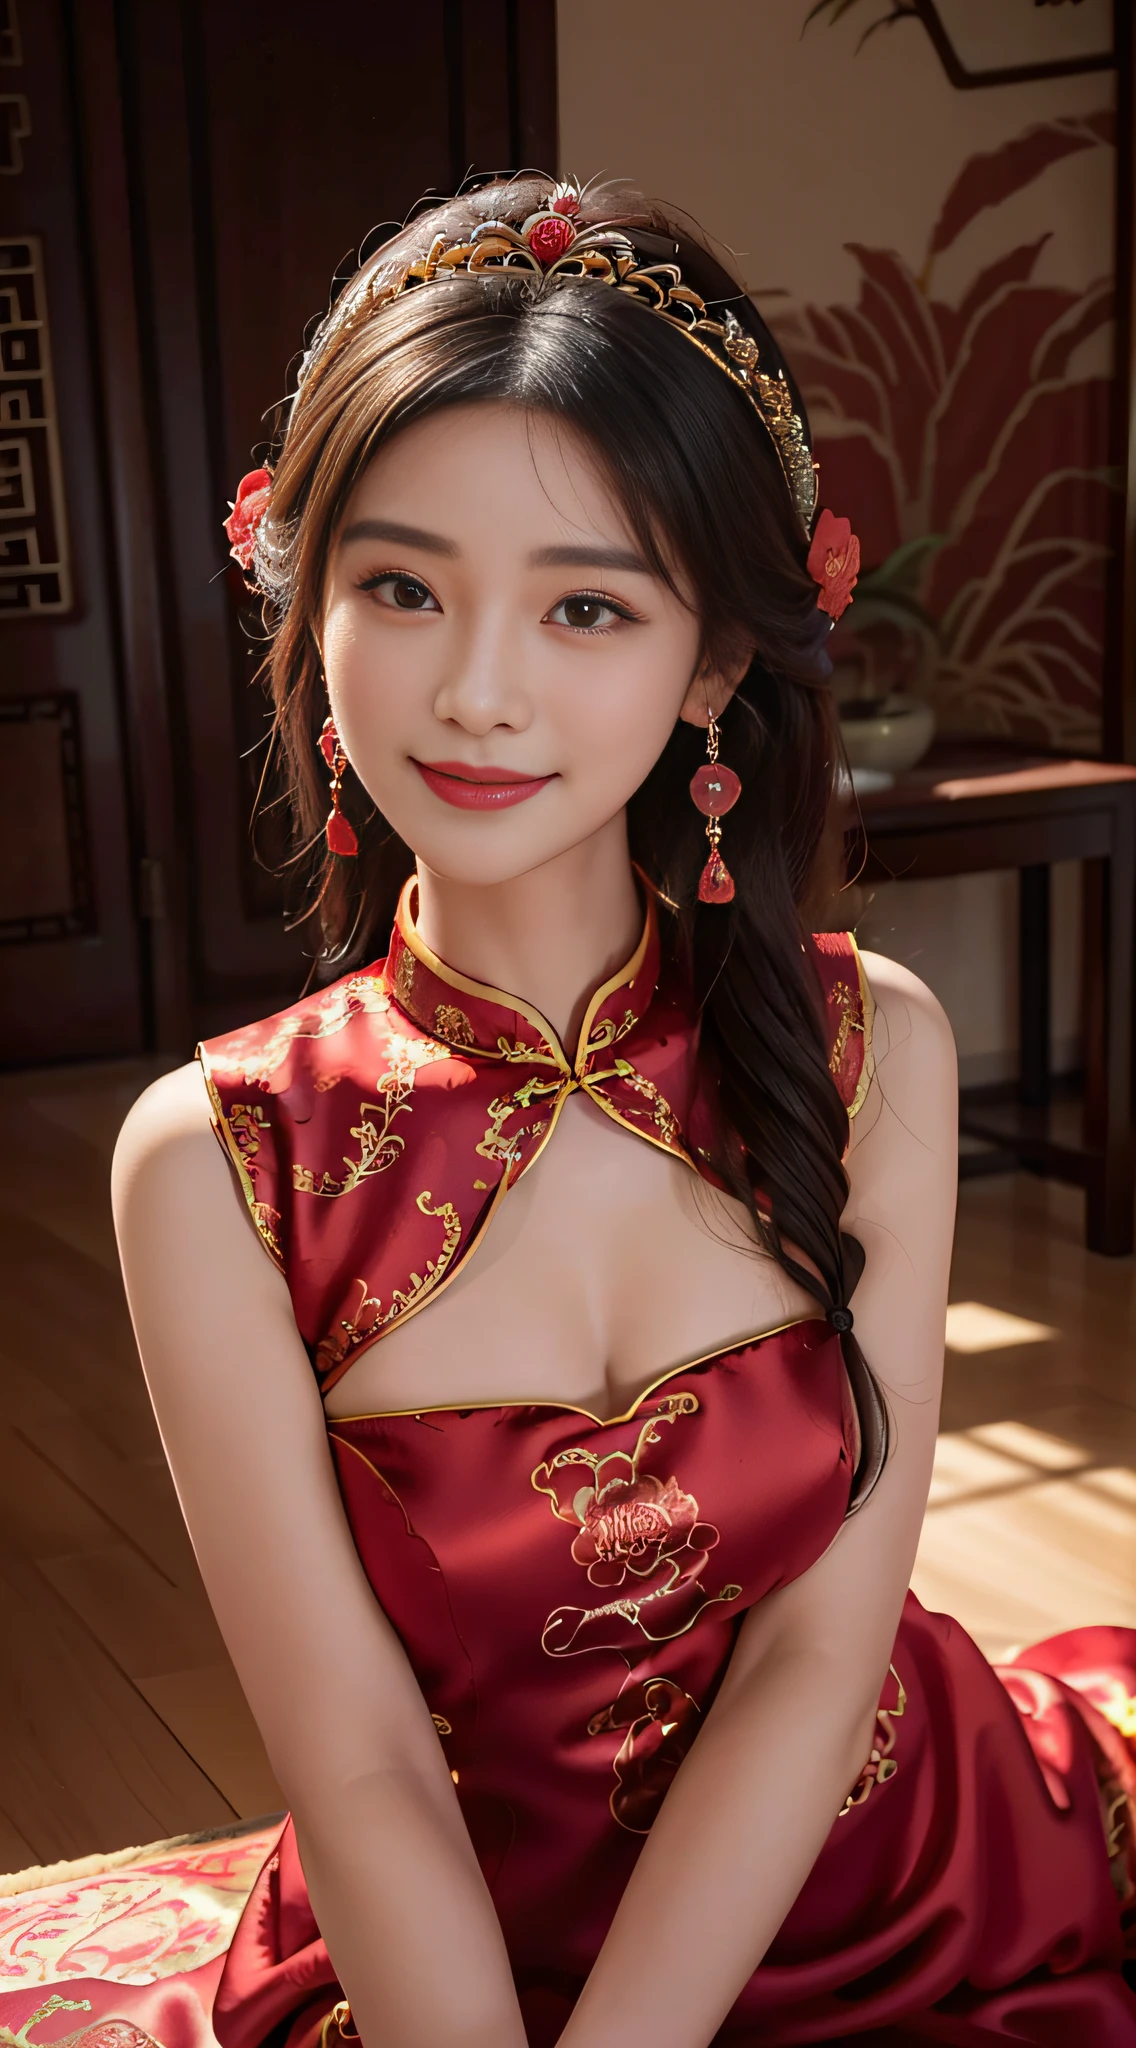 一个美丽的女孩，卷曲的头发，((美丽的红色中国秀禾服))，精细刺绣，(美丽又精致的皇冠头饰)，耳朵上挂着一对闪亮的耳环，甜美微笑，他的脸红了，微笑，手捧鲜花